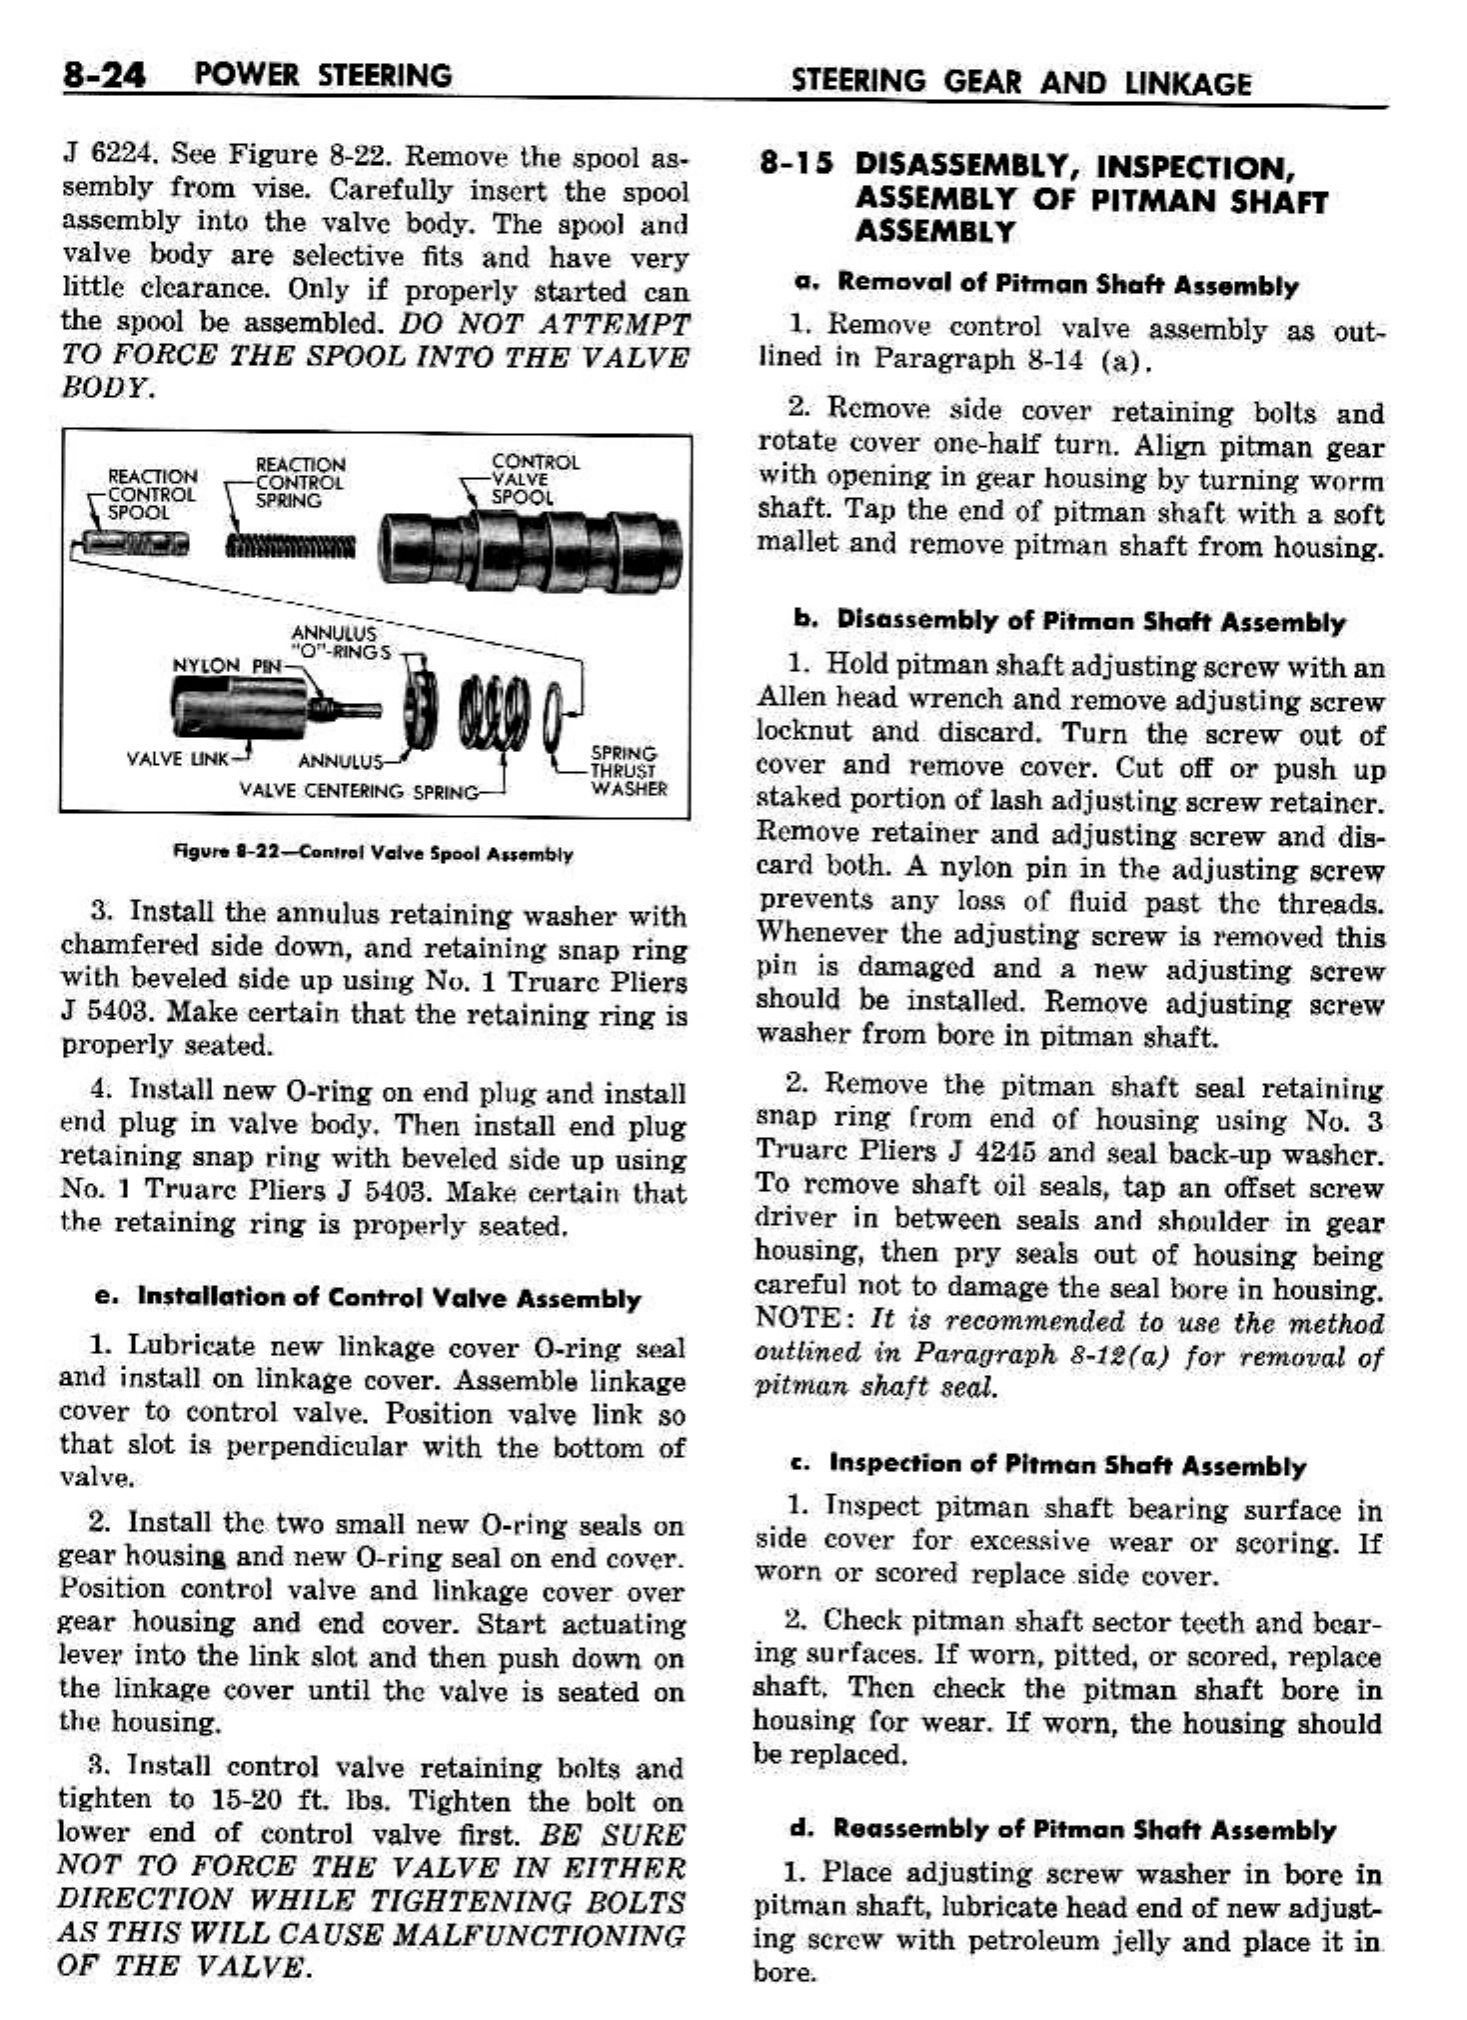 n_09 1958 Buick Shop Manual - Steering_24.jpg